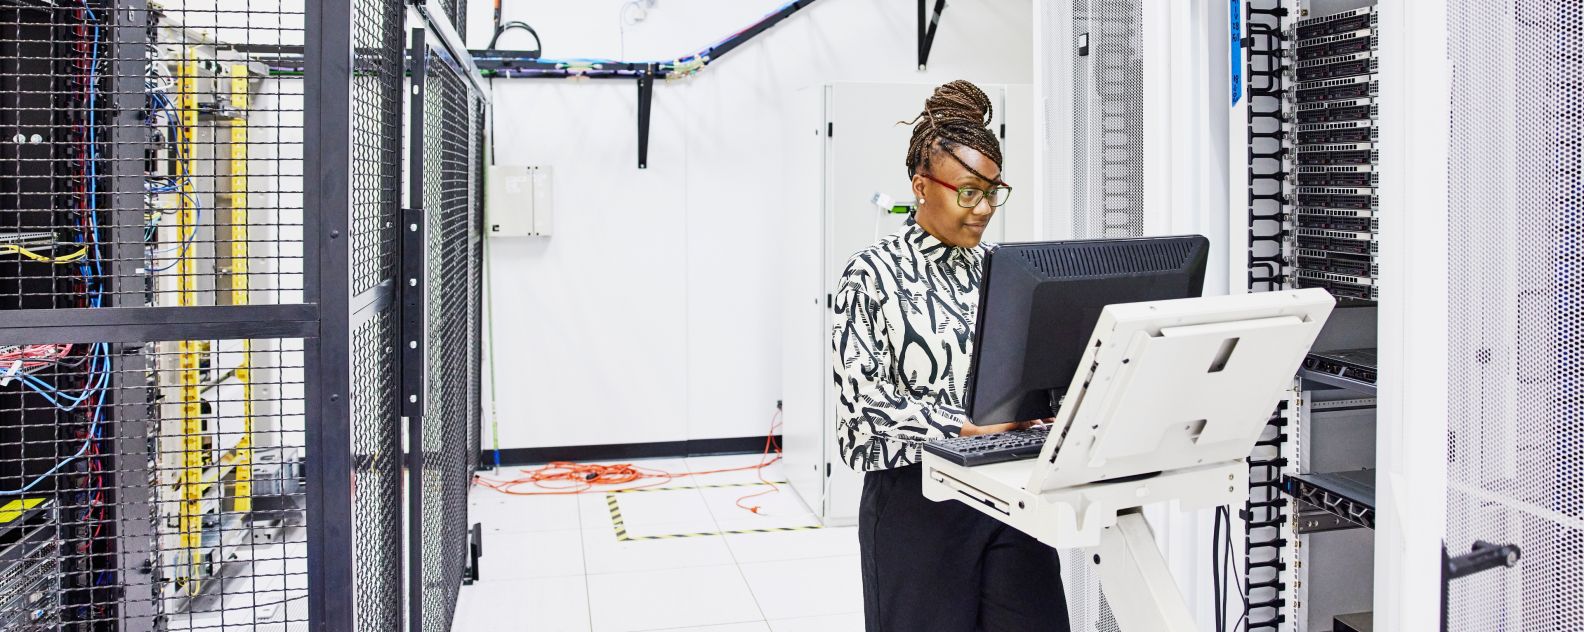  データセンターでサーバーの構成に取り組む女性IT担当者の画像